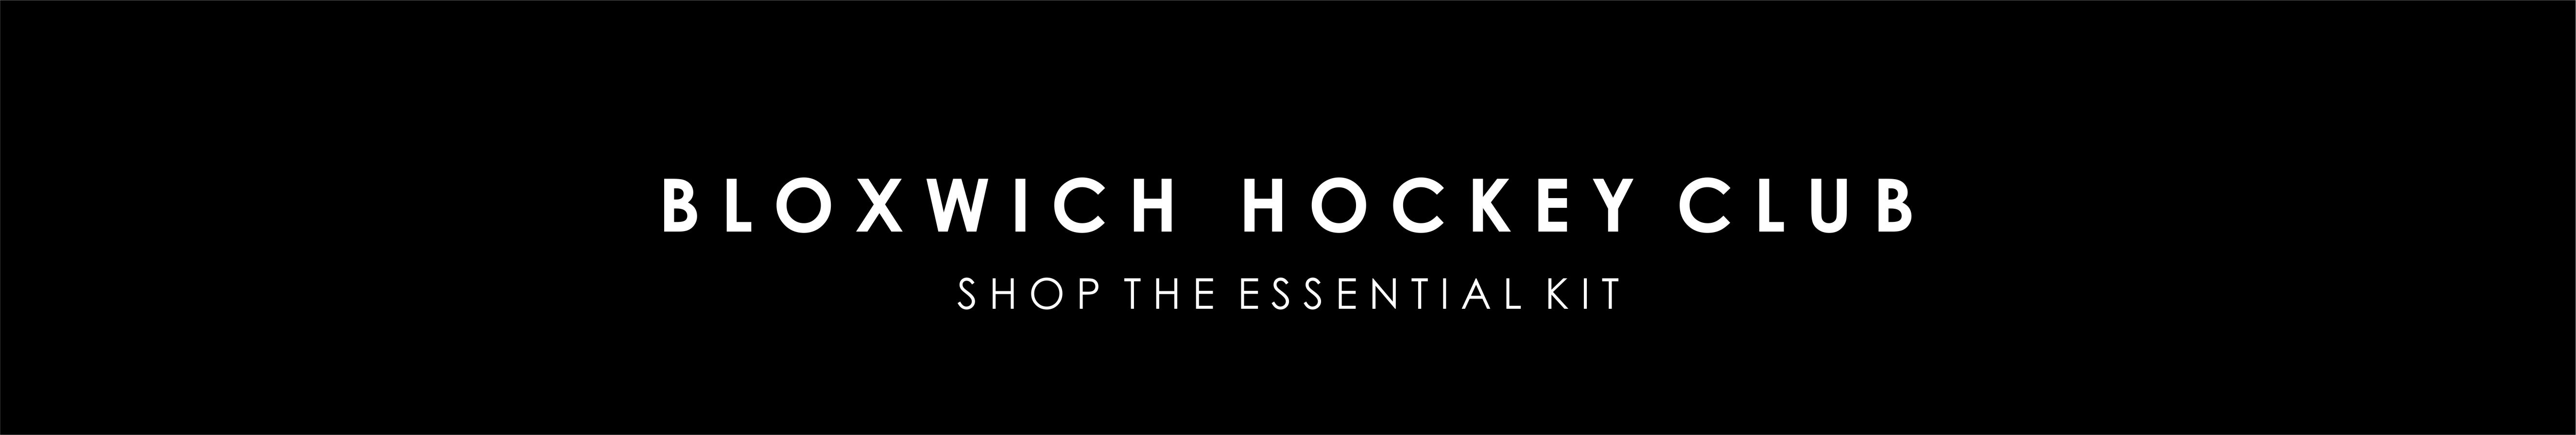 bloxwich-hockey-club-web-banner.jpg